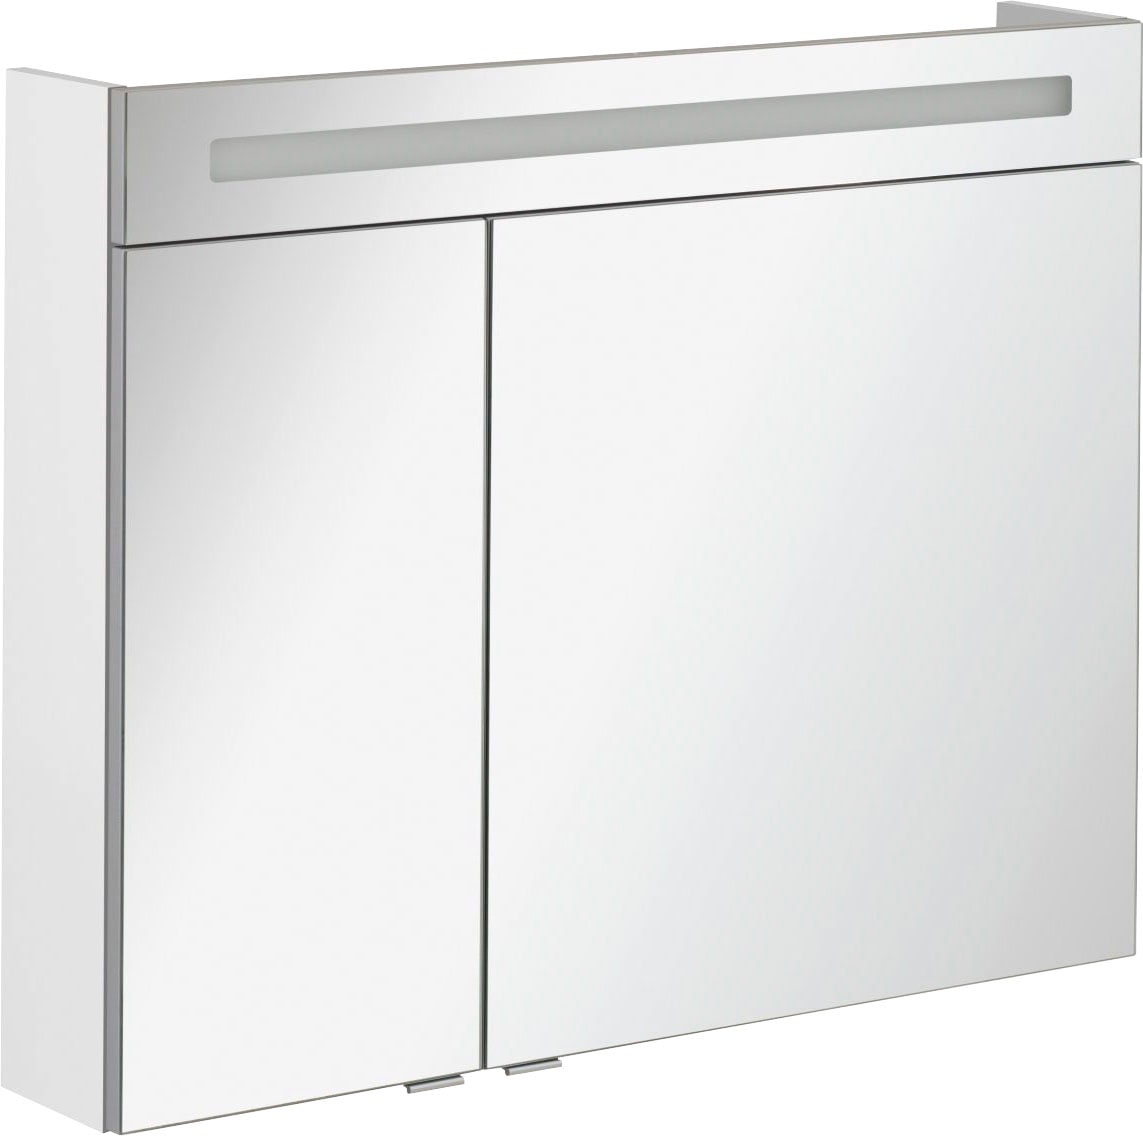 FACKELMANN Spiegelschrank "CL 90 - weiß", Badmöbel Breite 90 cm, 2 Türen, doppelseitig verspiegelt